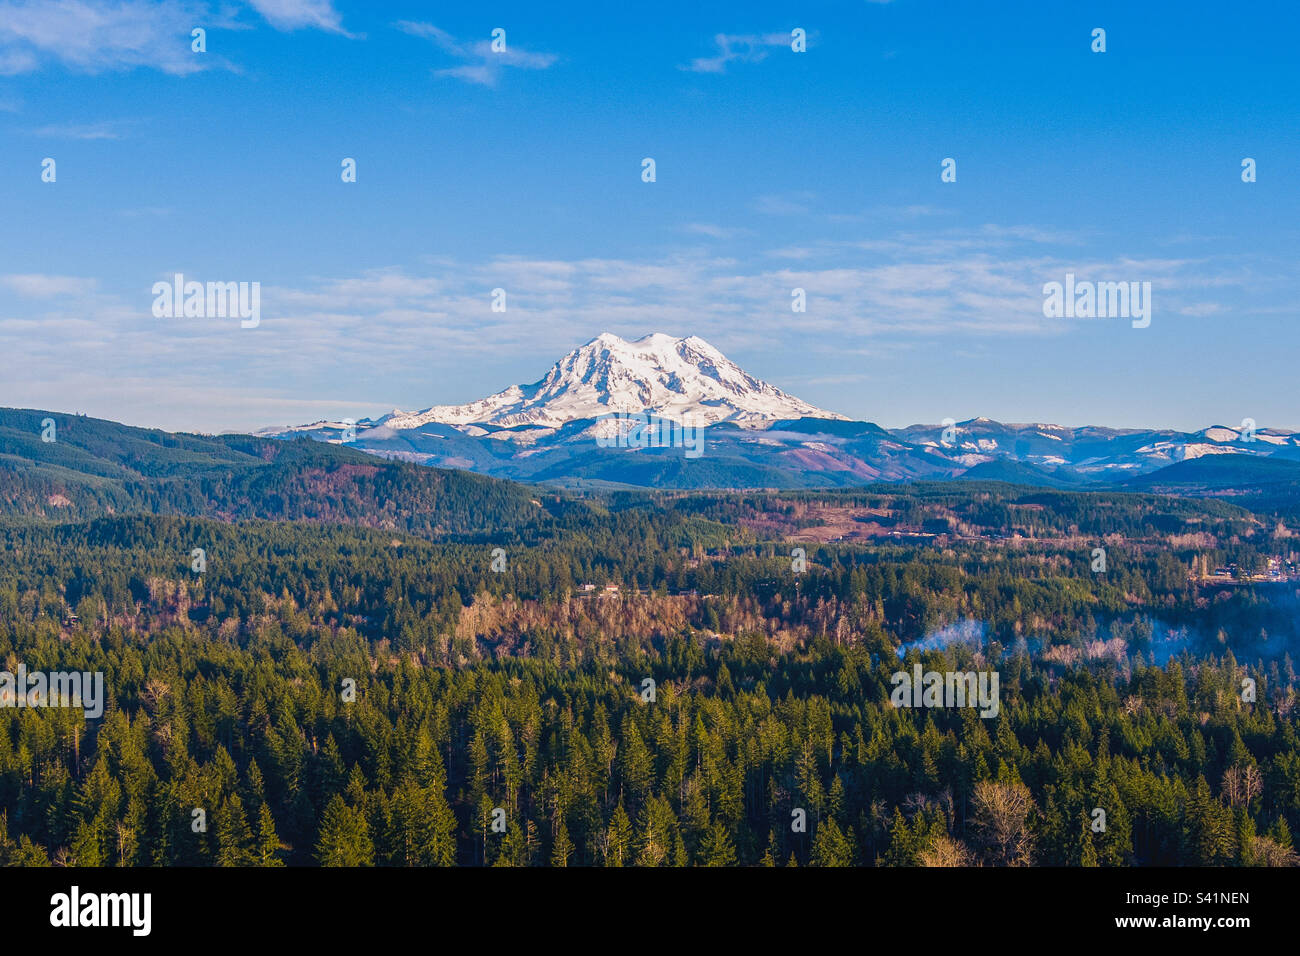 Mount Rainier of Washington State Stock Photo